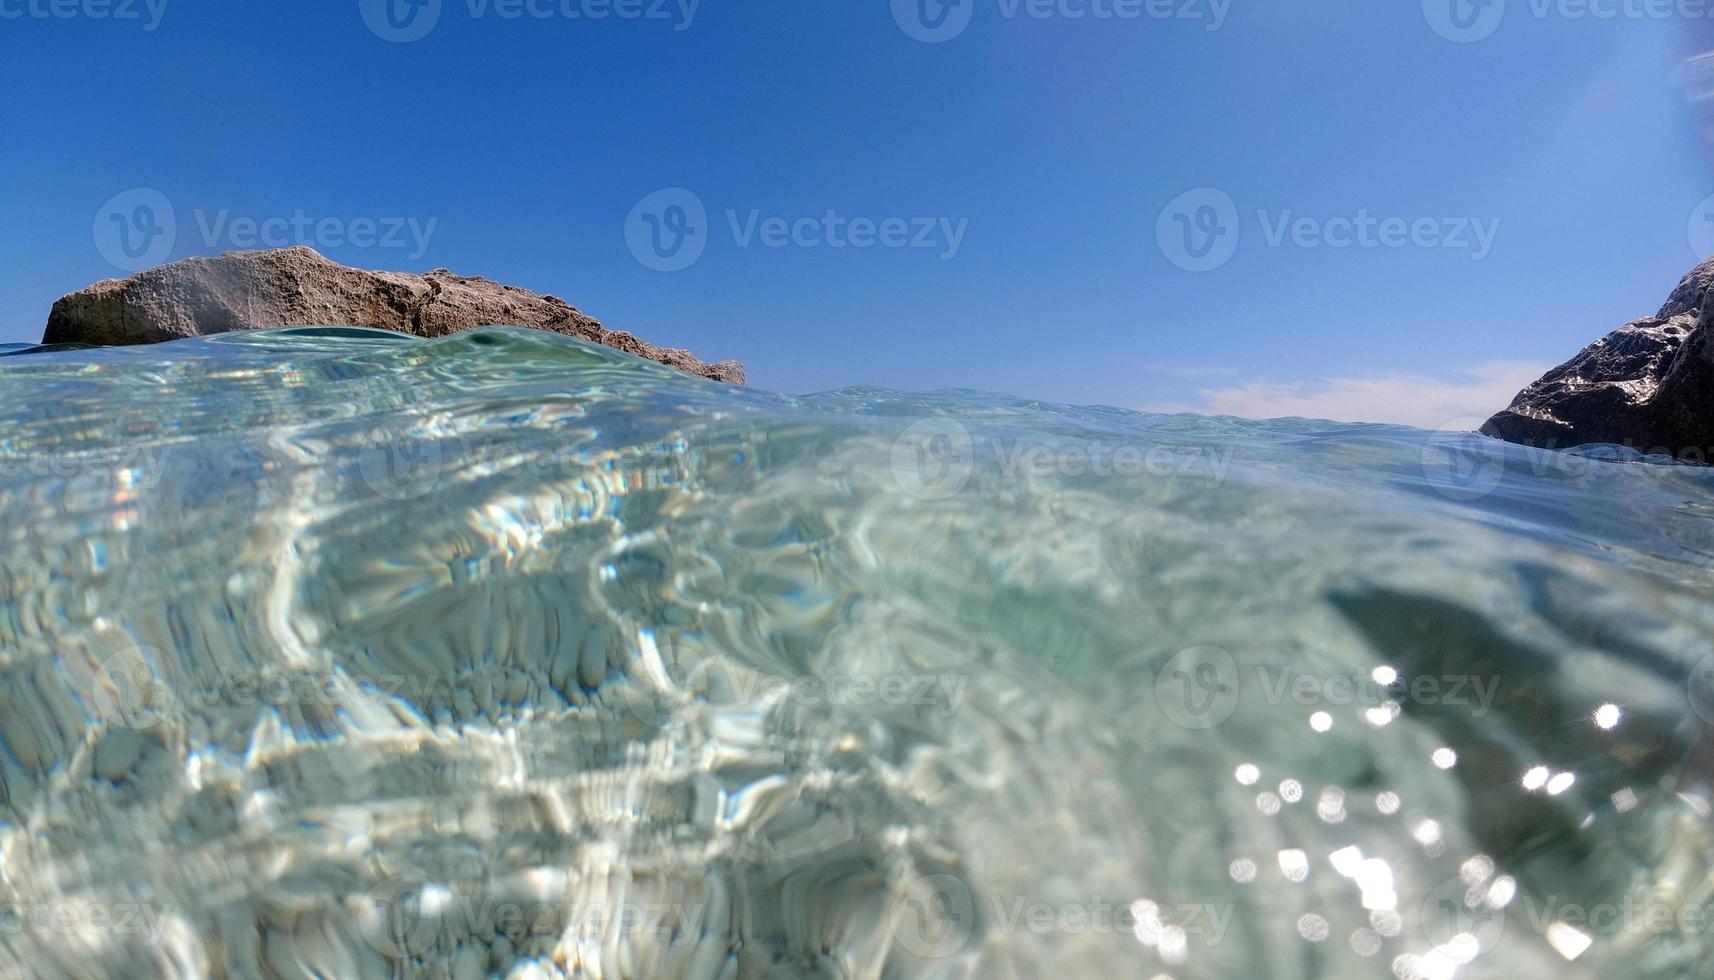 vista subaquática da água cristalina da sardenha durante o mergulho foto